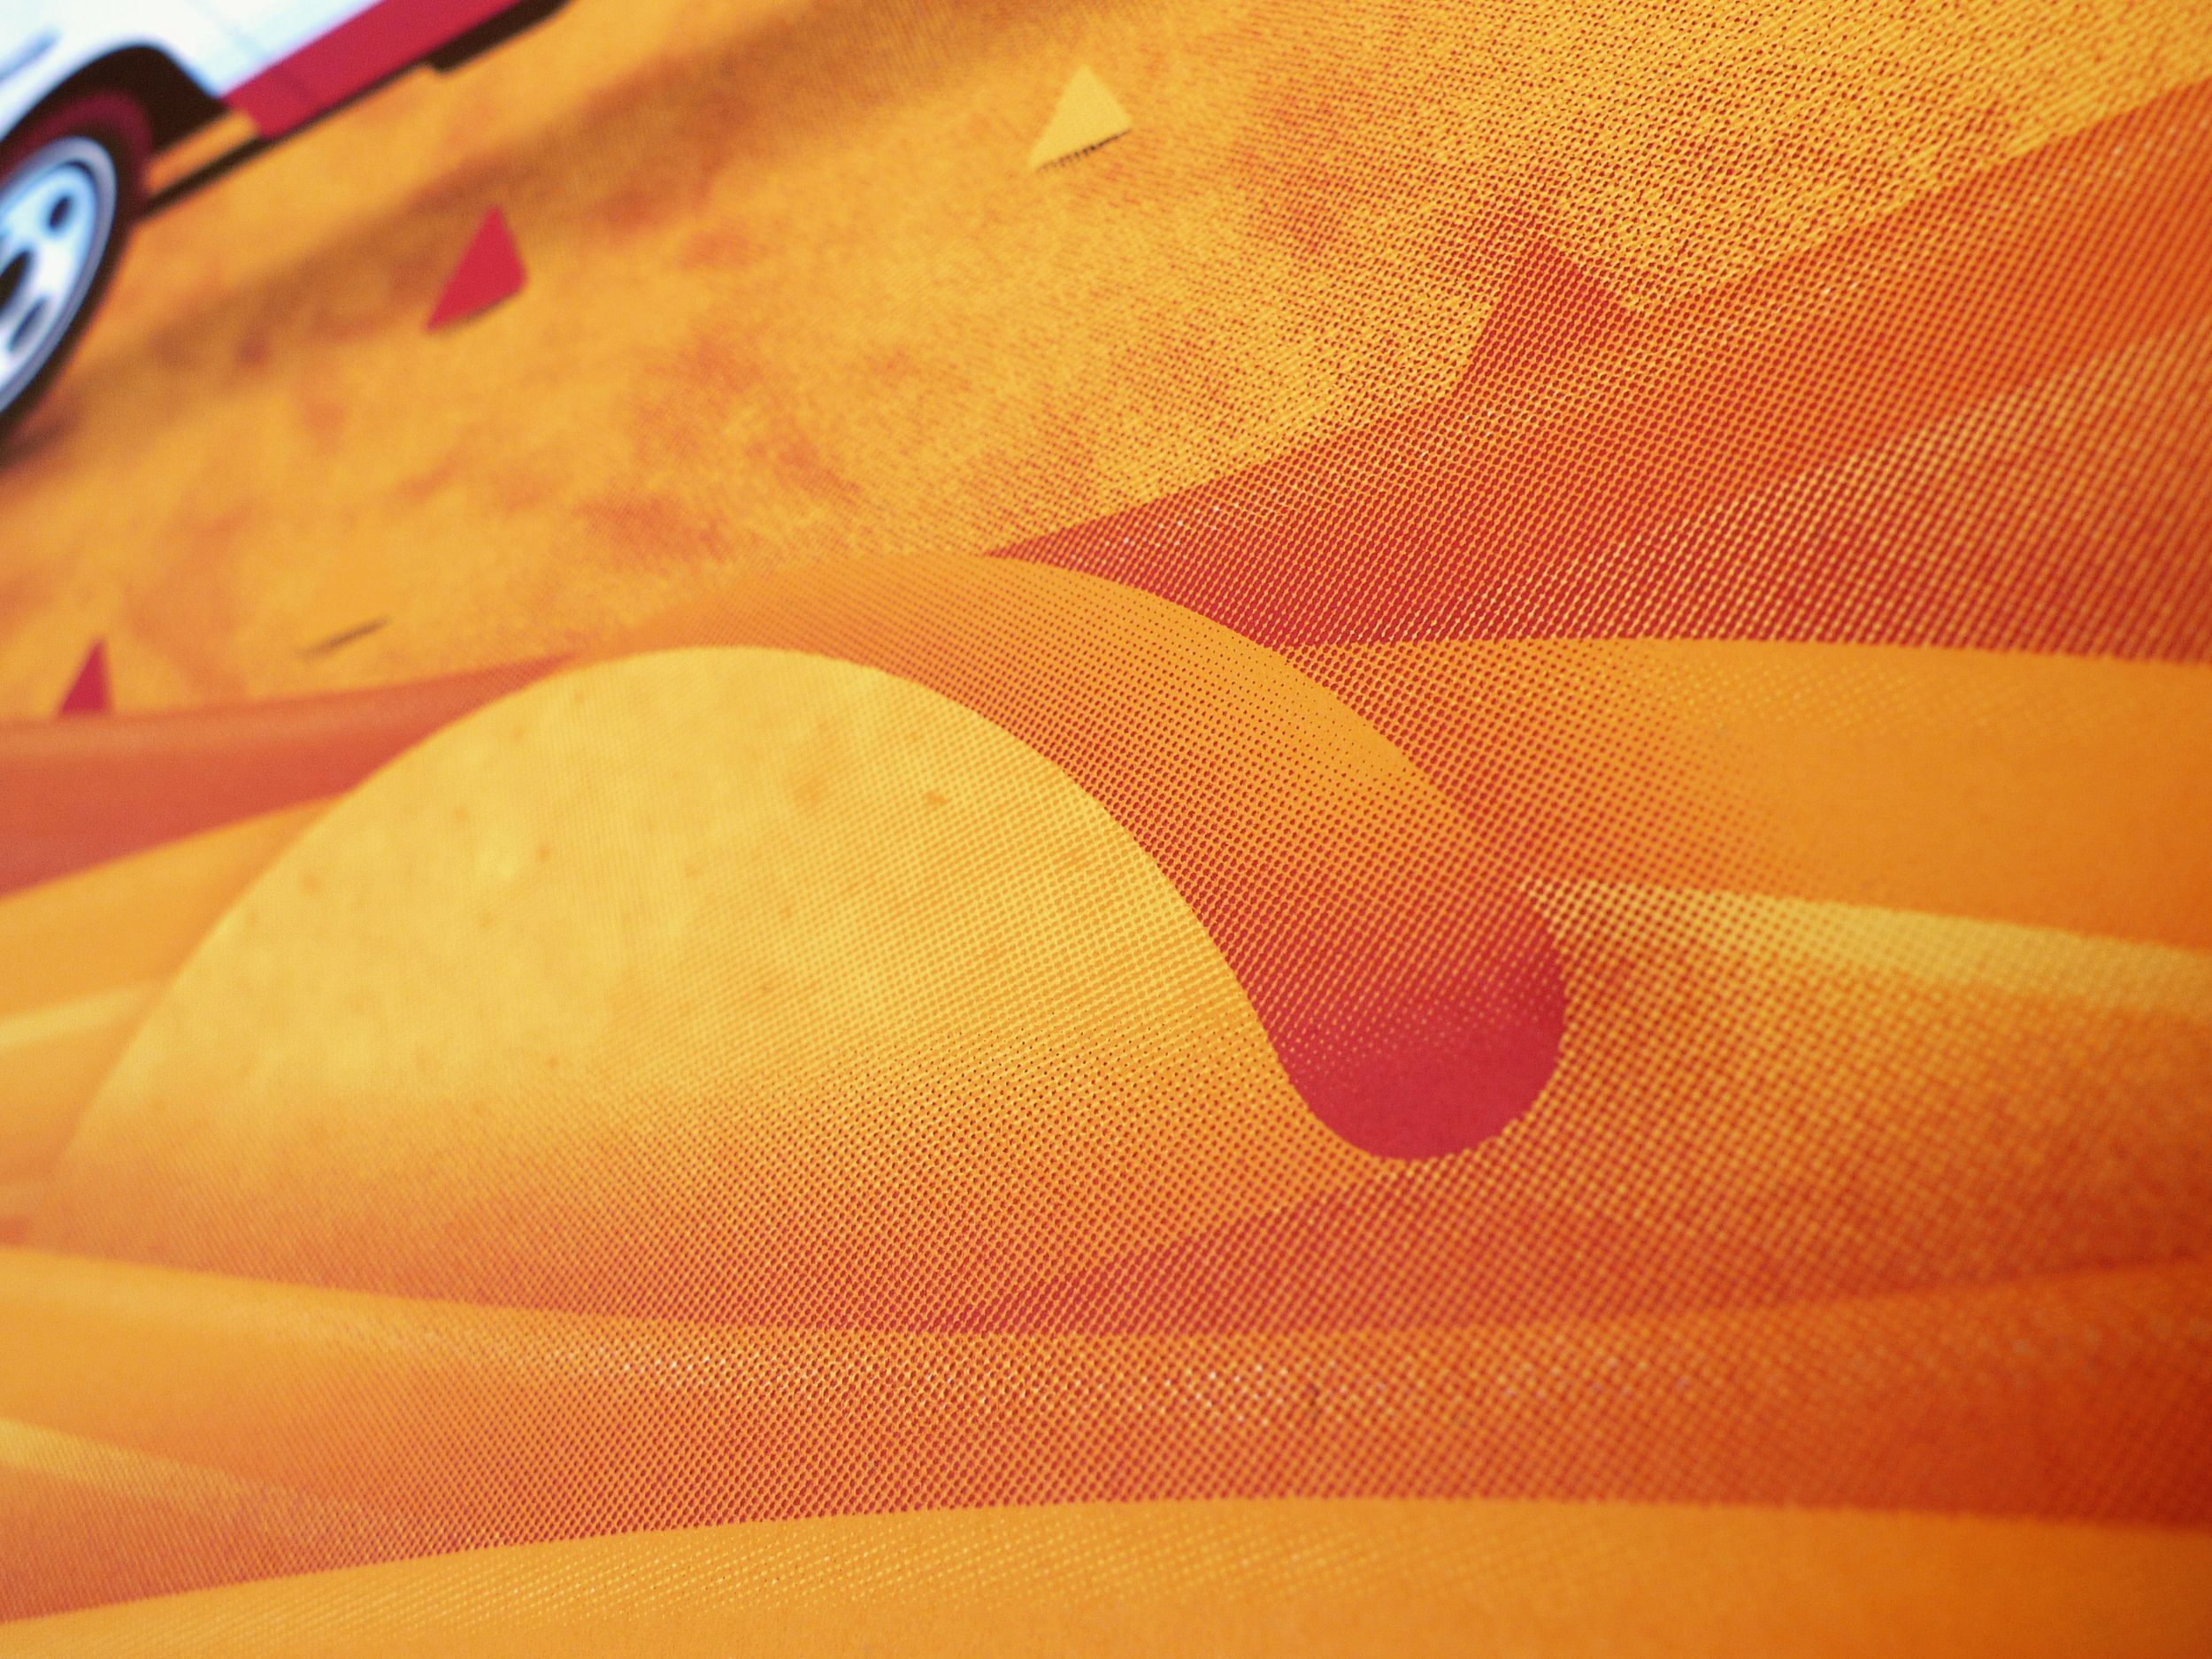 A Doritos bag is printed with a desert scene. - Doritos